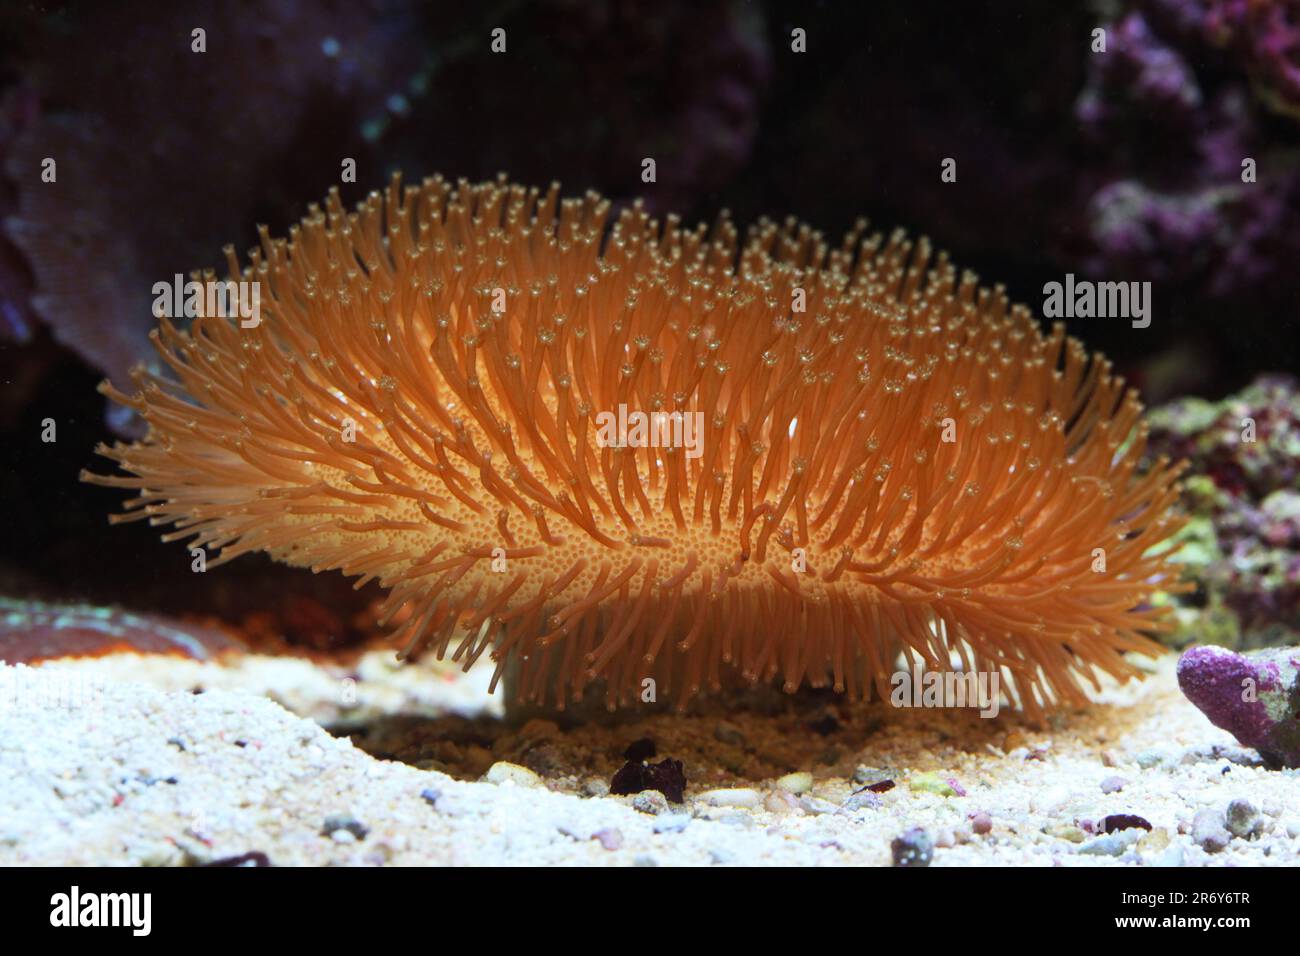 Leather coral [ Sarcophyton sp ]in marine reef aquarium Stock Photo